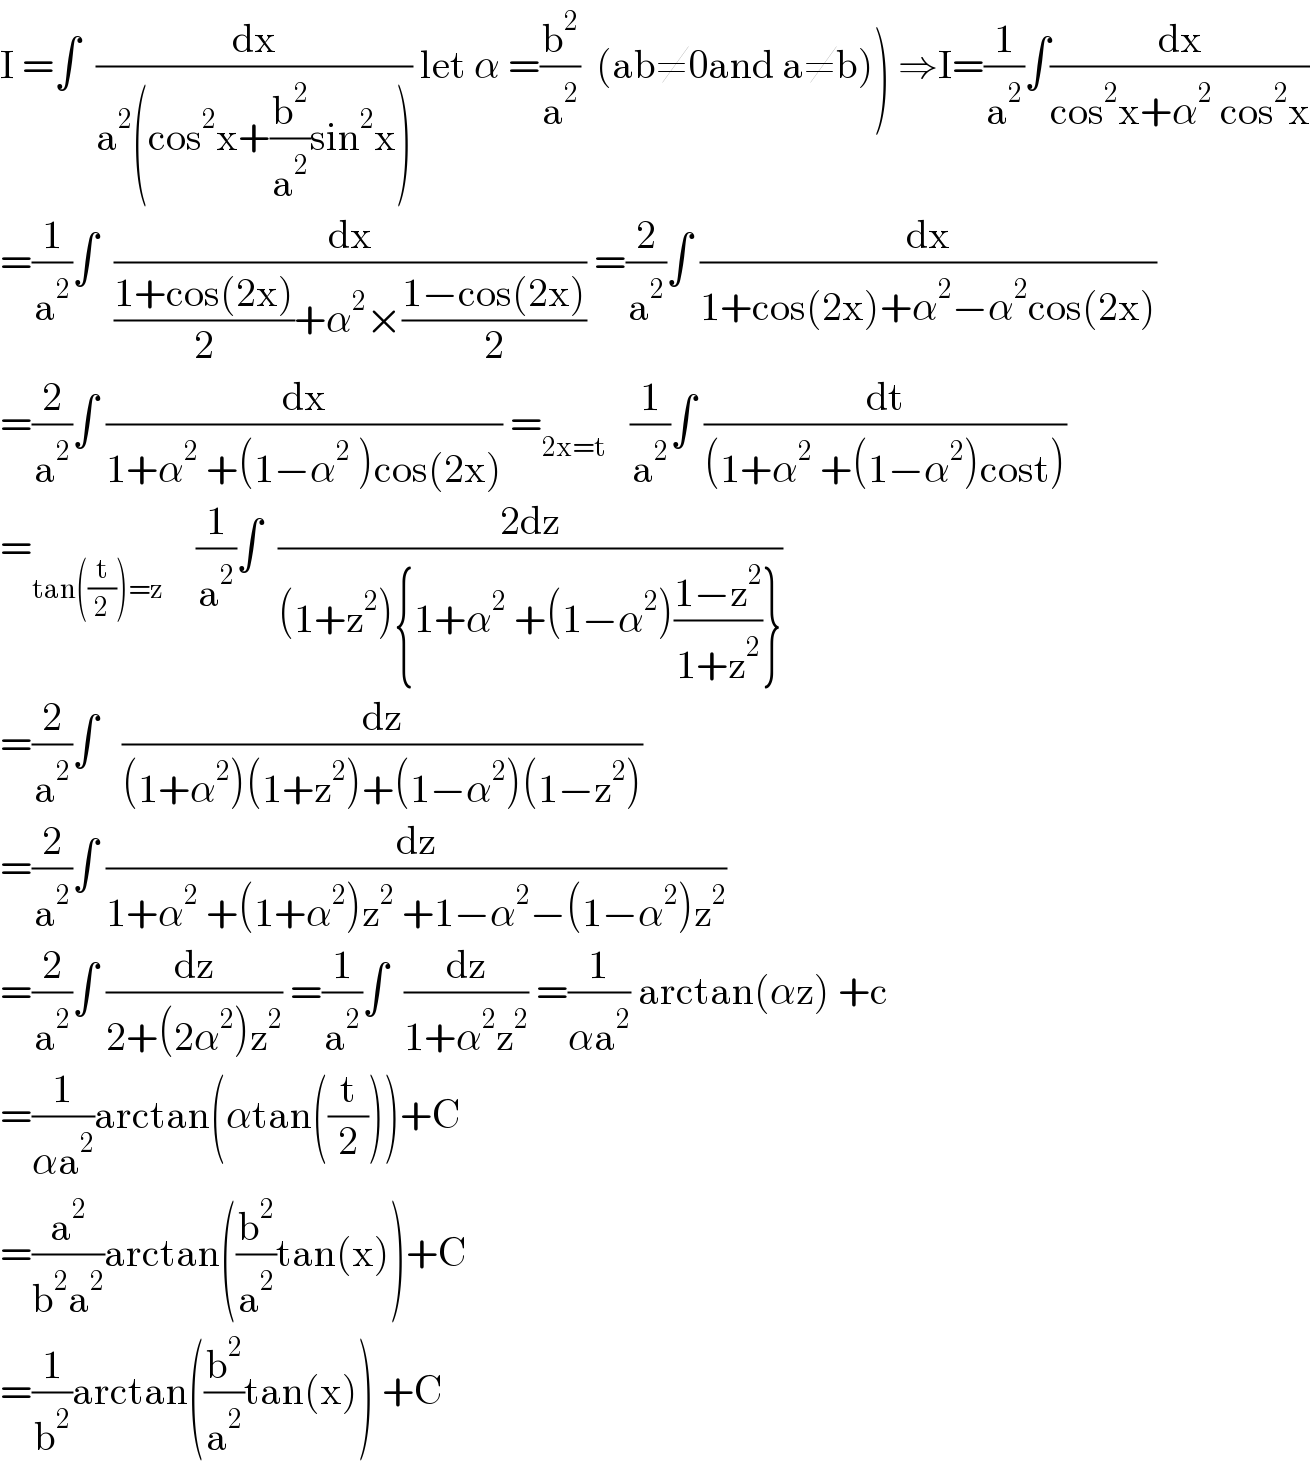 I =∫  (dx/(a^2 (cos^2 x+(b^2 /a^2 )sin^2 x))) let α =(b^2 /a^2 )  (ab≠0and a≠b)) ⇒I=(1/a^2 )∫(dx/(cos^2 x+α^2  cos^2 x))  =(1/a^2 )∫  (dx/(((1+cos(2x))/2)+α^2 ×((1−cos(2x))/2))) =(2/a^2 )∫ (dx/(1+cos(2x)+α^2 −α^2 cos(2x)))  =(2/a^2 )∫ (dx/(1+α^2  +(1−α^2  )cos(2x))) =_(2x=t)    (1/a^2 )∫ (dt/((1+α^2  +(1−α^2 )cost)))  =_(tan((t/2))=z)     (1/a^2 )∫  ((2dz)/((1+z^2 ){1+α^2  +(1−α^2 )((1−z^2 )/(1+z^2 ))}))  =(2/a^2 )∫   (dz/((1+α^2 )(1+z^2 )+(1−α^2 )(1−z^2 )))  =(2/a^2 )∫ (dz/(1+α^2  +(1+α^2 )z^2  +1−α^2 −(1−α^2 )z^2 ))  =(2/a^2 )∫ (dz/(2+(2α^2 )z^2 )) =(1/a^2 )∫  (dz/(1+α^2 z^2 )) =(1/(αa^2 )) arctan(αz) +c  =(1/(αa^2 ))arctan(αtan((t/2)))+C  =(a^2 /(b^2 a^2 ))arctan((b^2 /a^2 )tan(x))+C  =(1/b^2 )arctan((b^2 /a^2 )tan(x)) +C  